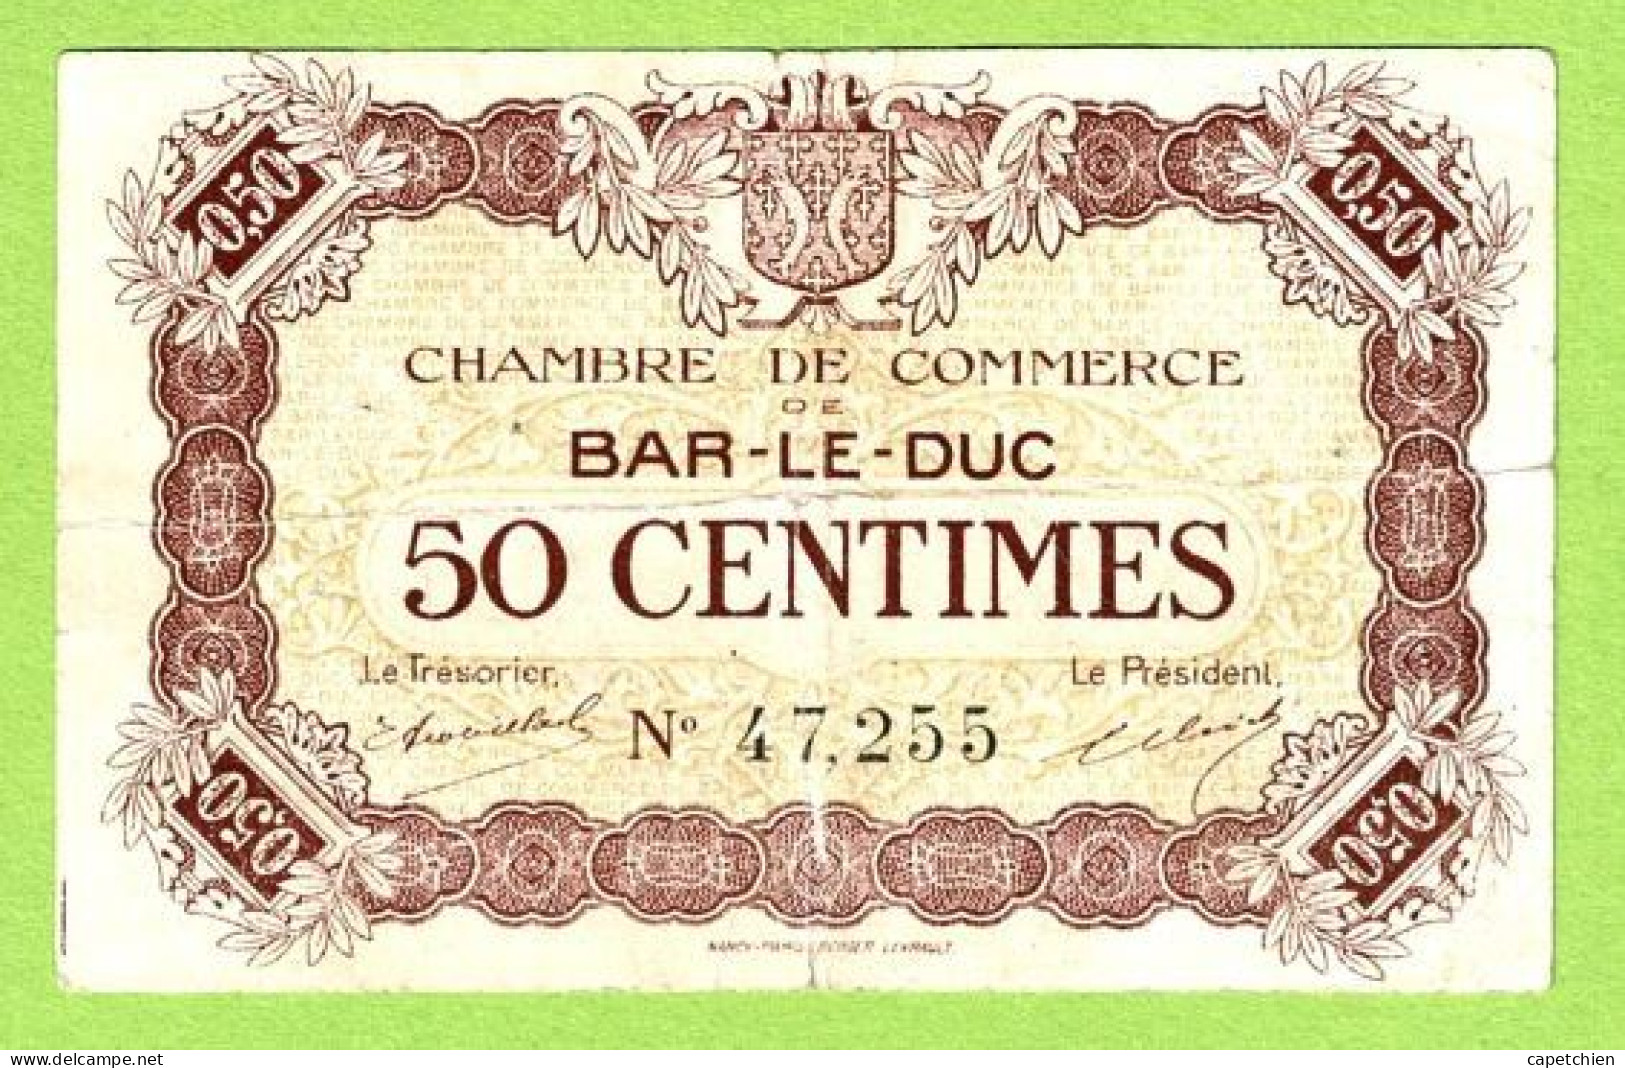 FRANCE / CHAMBRE DE COMMERCE / BAR LE DUC / 50 CENTIMES /  2 AOUT 1917  / 3ème EMISSION / N° 47255 - Handelskammer